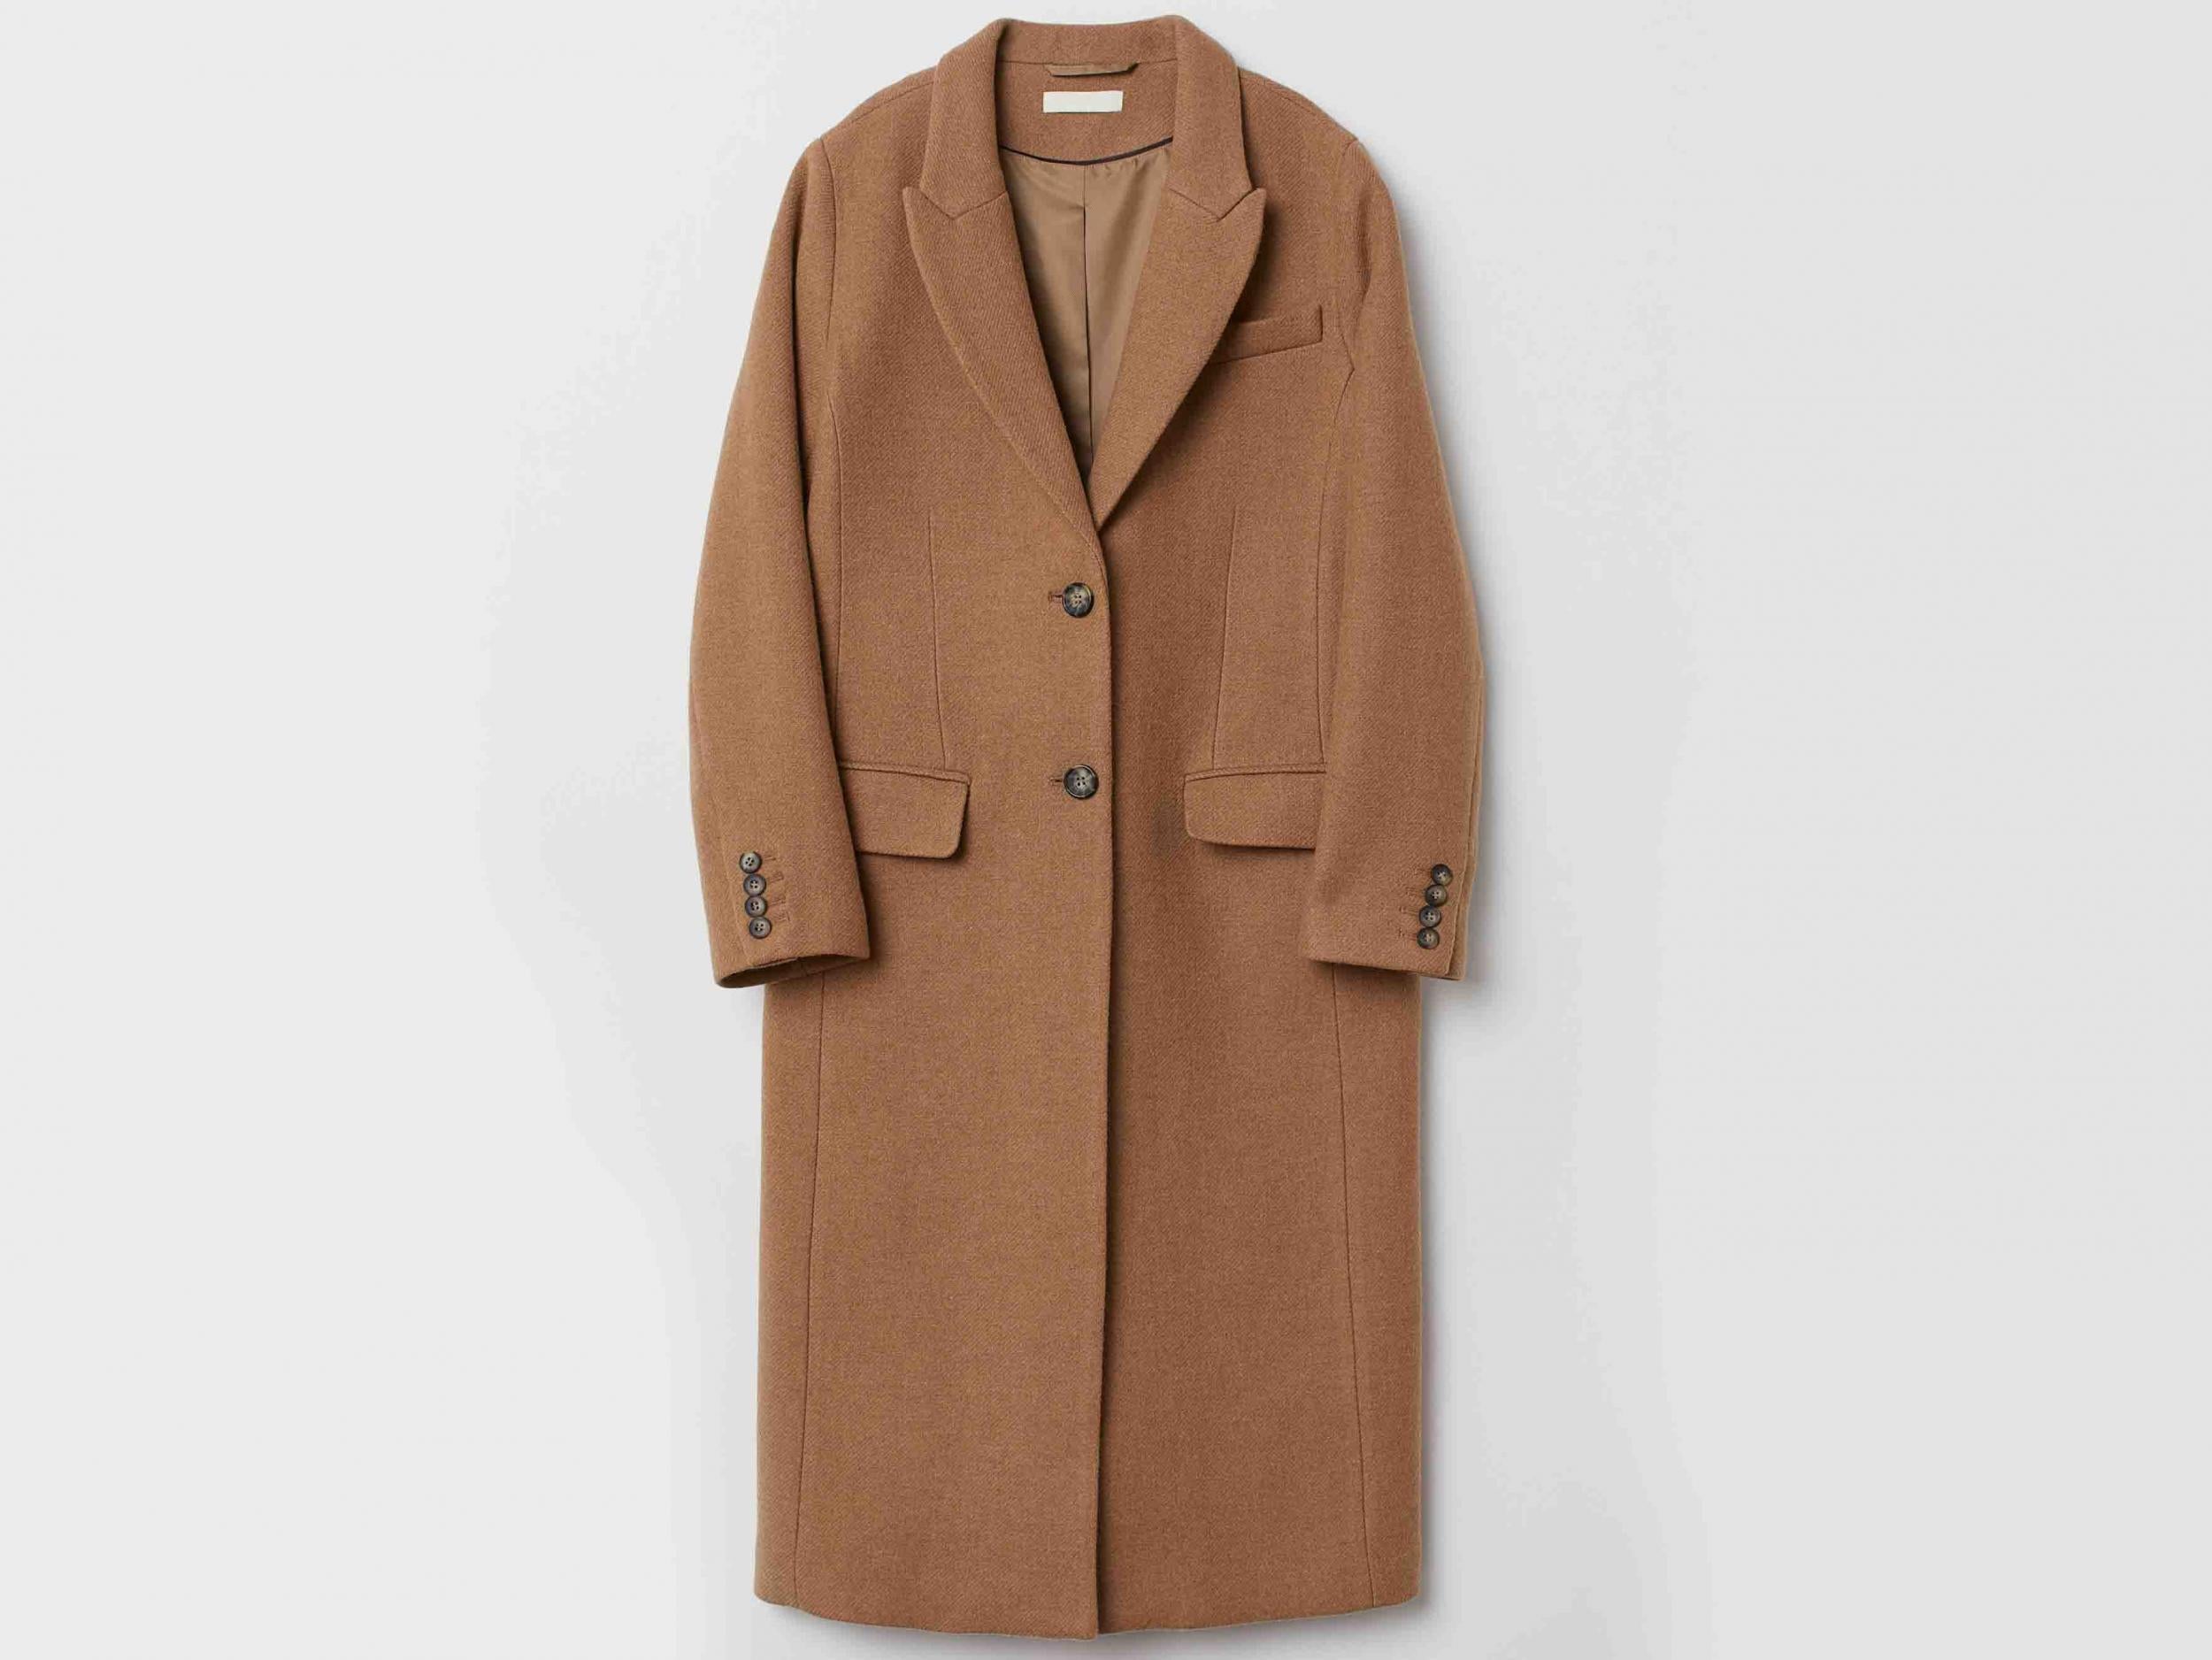 Wool-Blend Coat, £79.99, H&amp;M